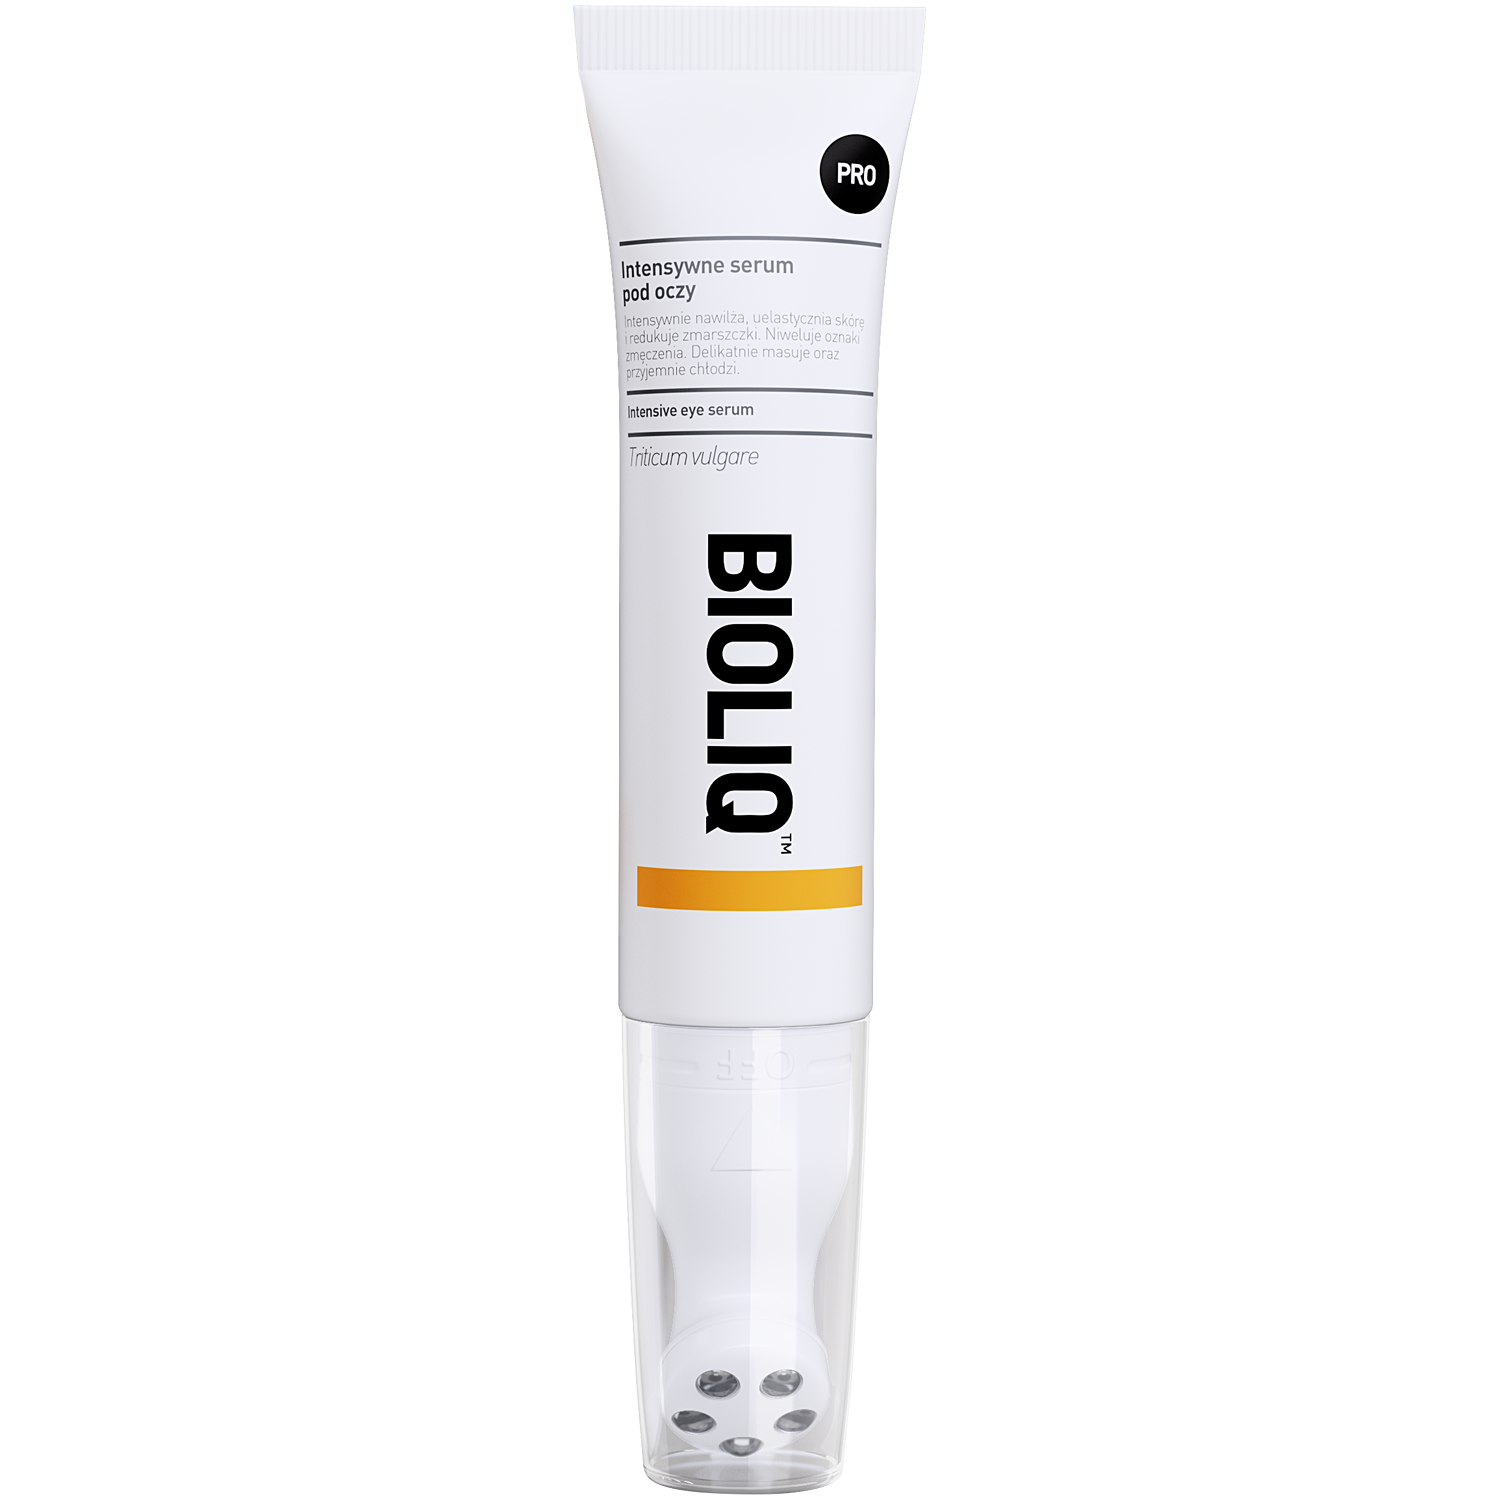 Bioliq Pro интенсивная сыворотка для глаз, 15 мл